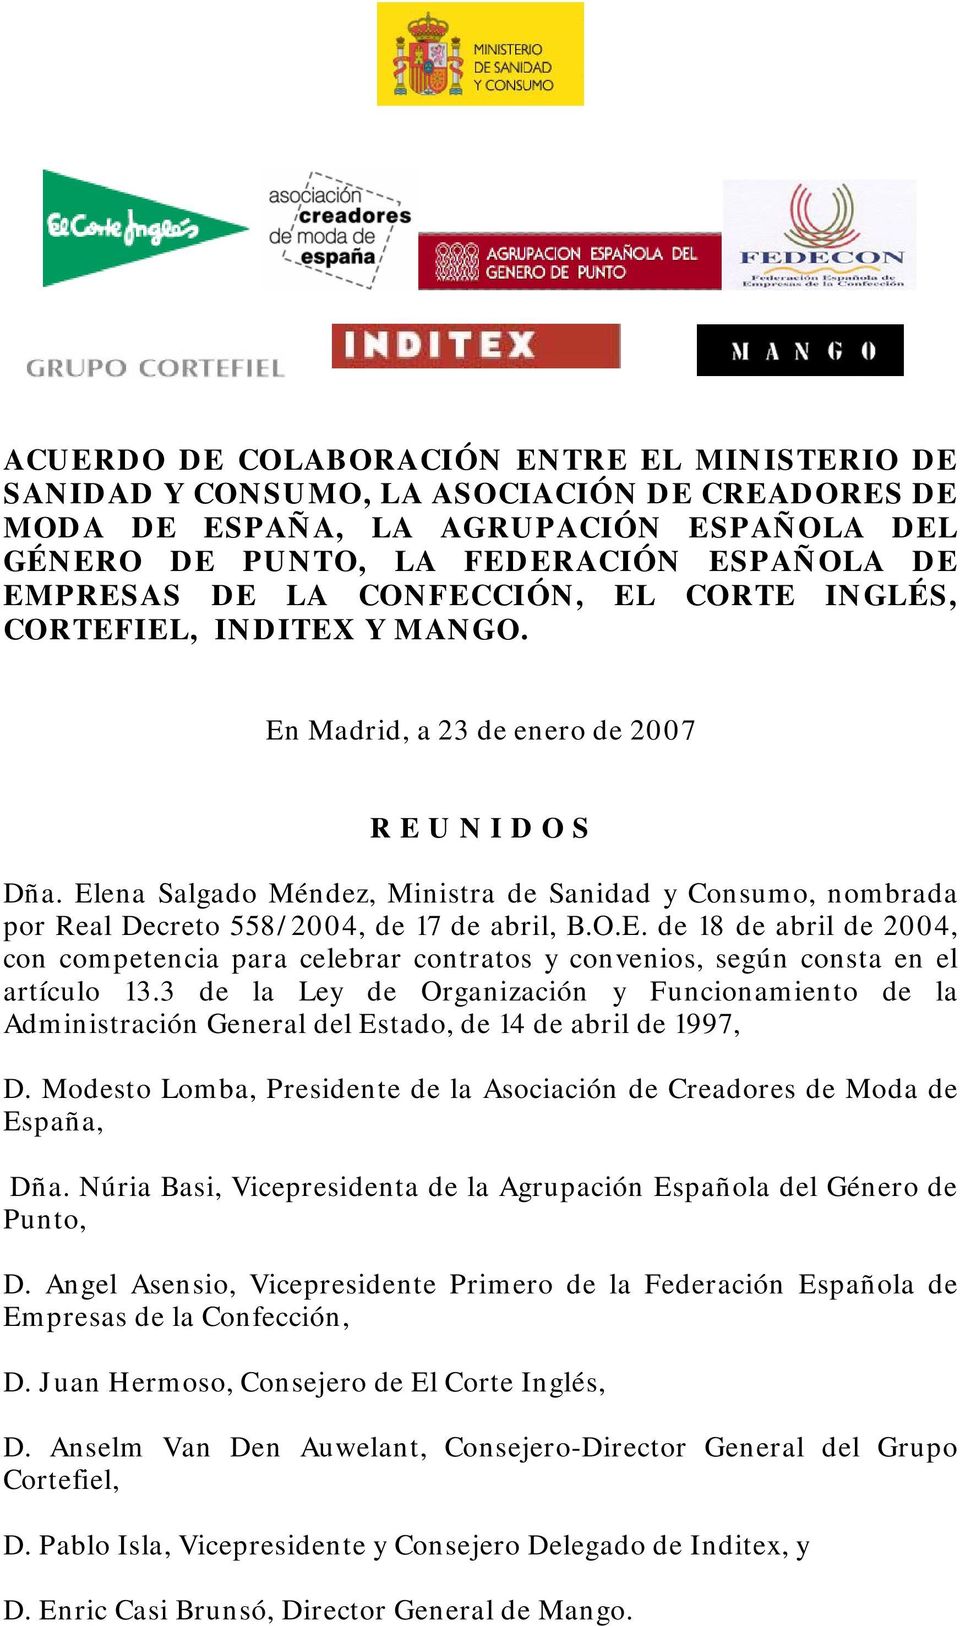 Elena Salgado Méndez, Ministra de Sanidad y Consumo, nombrada por Real Decreto 558/2004, de 17 de abril, B.O.E. de 18 de abril de 2004, con competencia para celebrar contratos y convenios, según consta en el artículo 13.